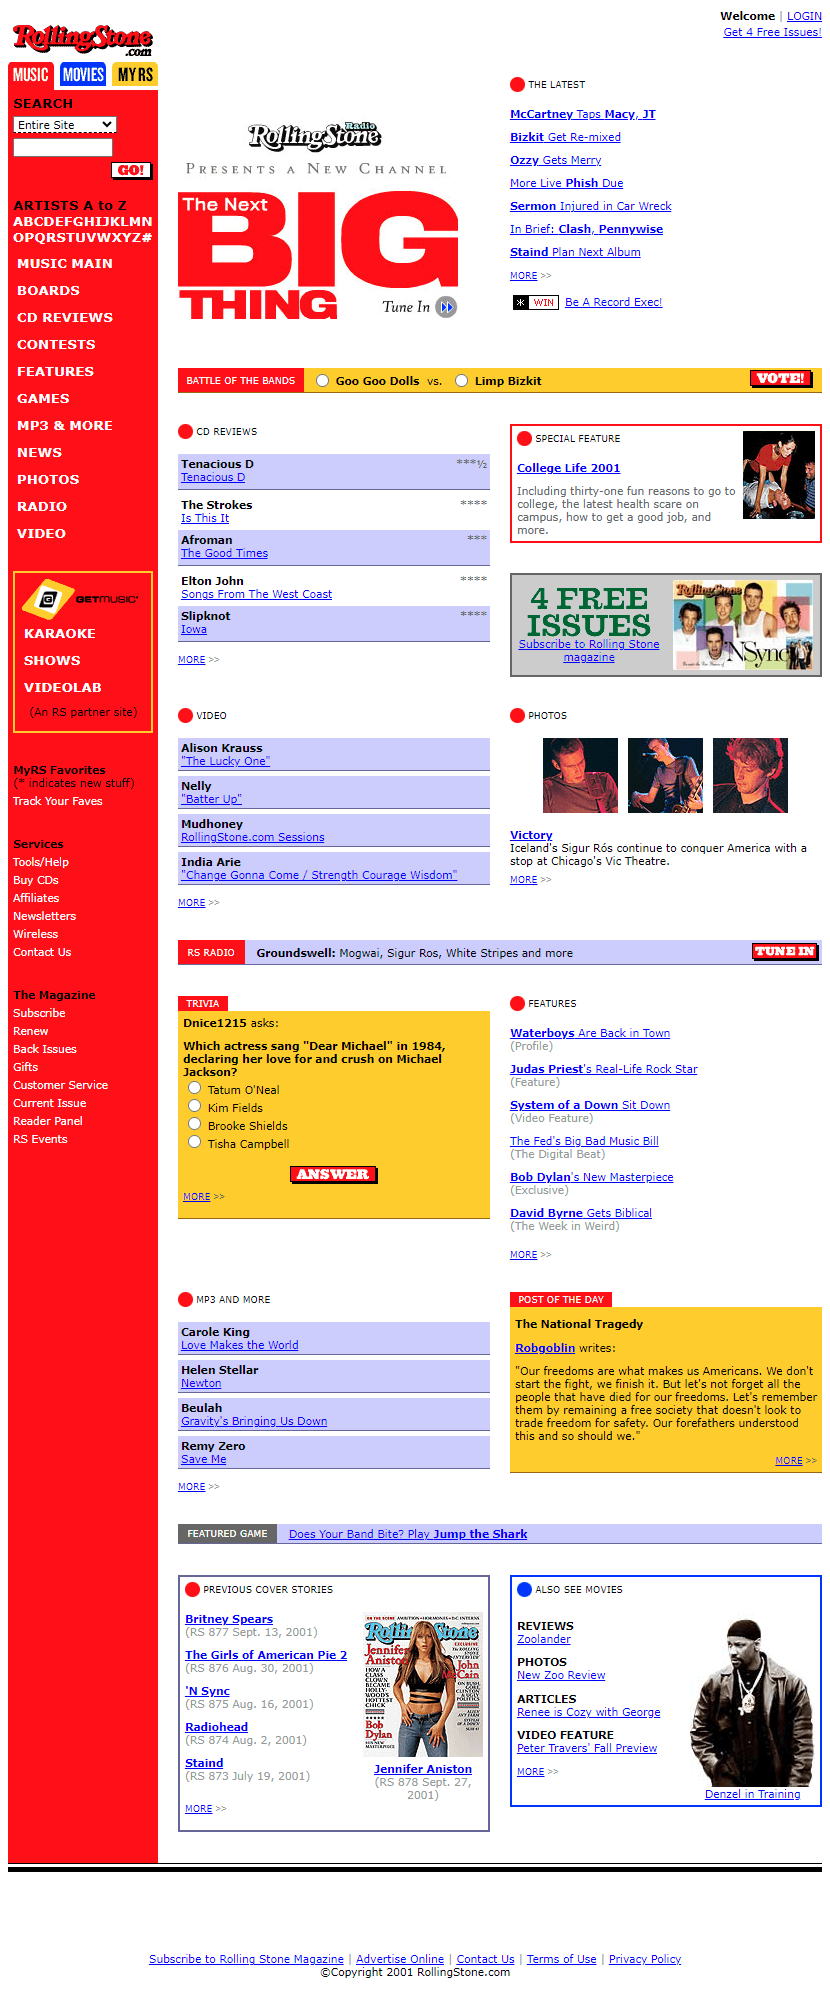 Rolling Stone website in 2001